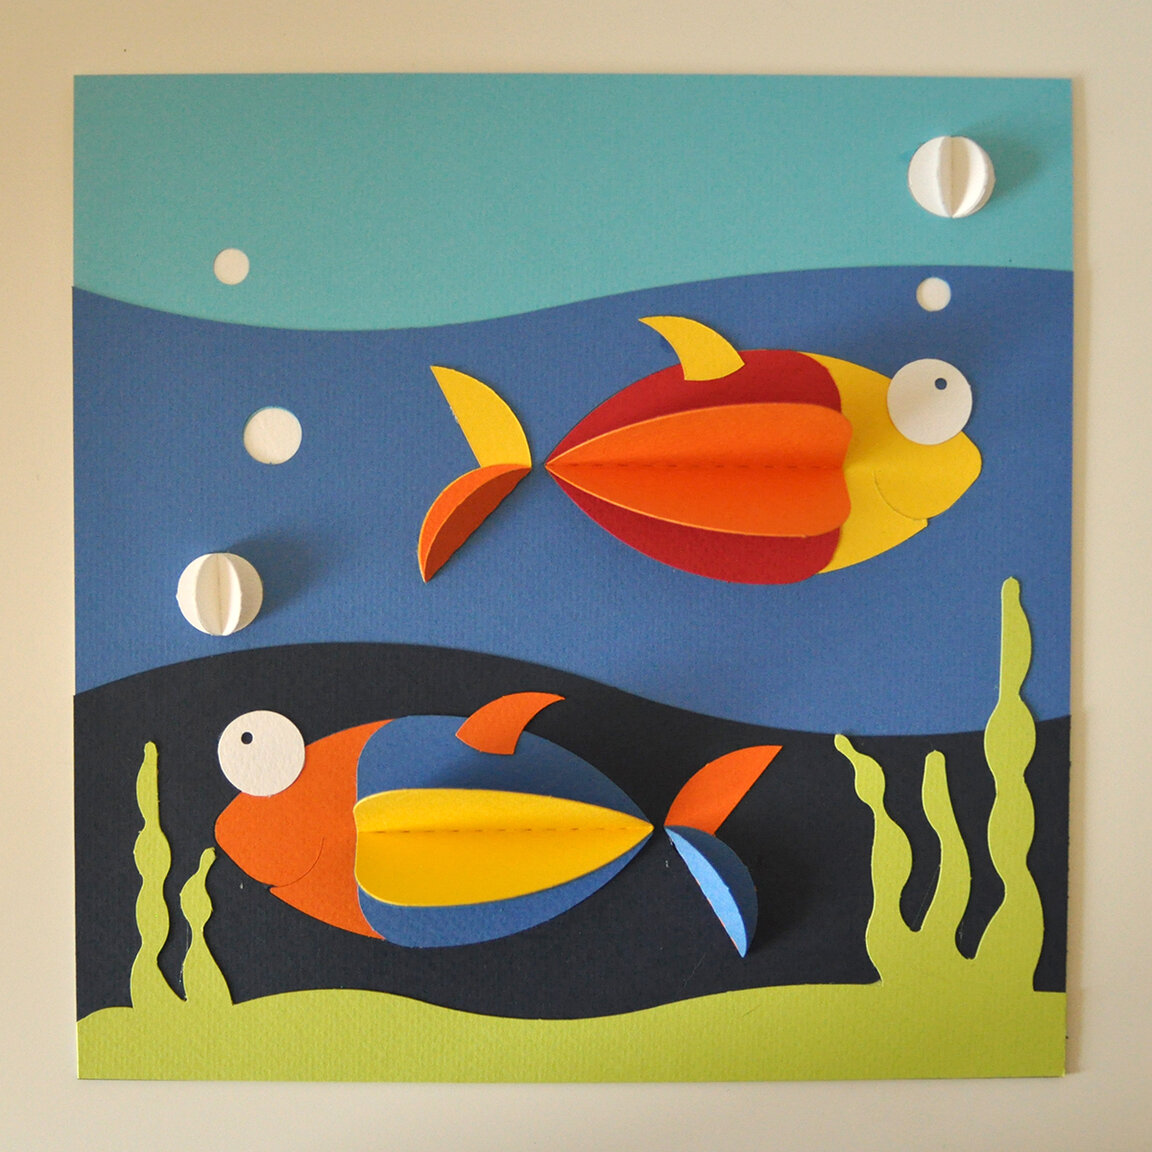 Καλλιτεχνική δραστηριότητα: "Ψάρια στο βυθό"